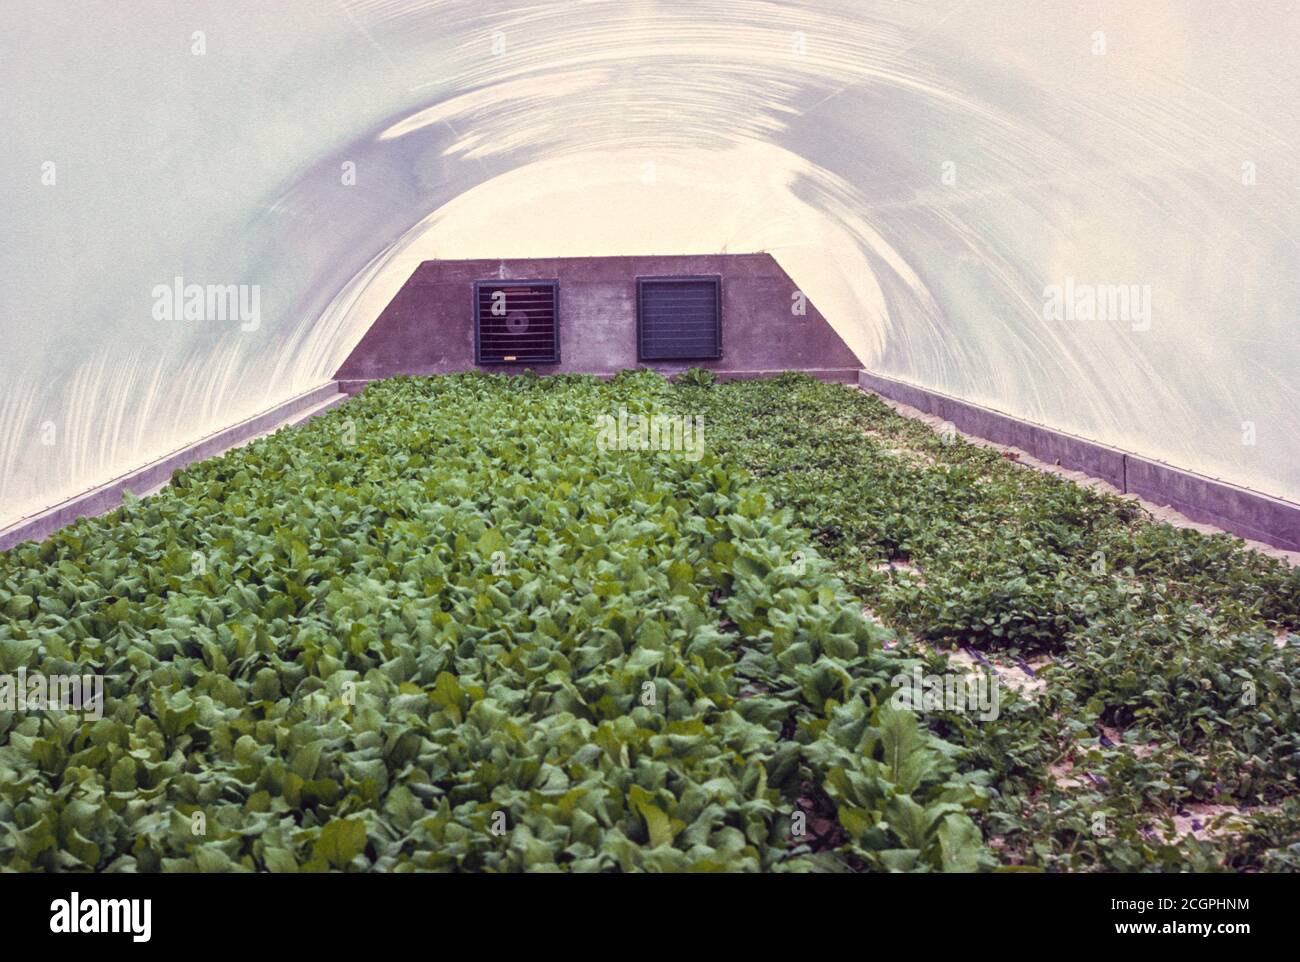 Abu Dhabi, VAE. Hydroponische Landwirtschaft im Jahr 1972 zur Versorgung des lokalen Lebensmittelbedarfs. Fotografiert Im März 1972. Stockfoto